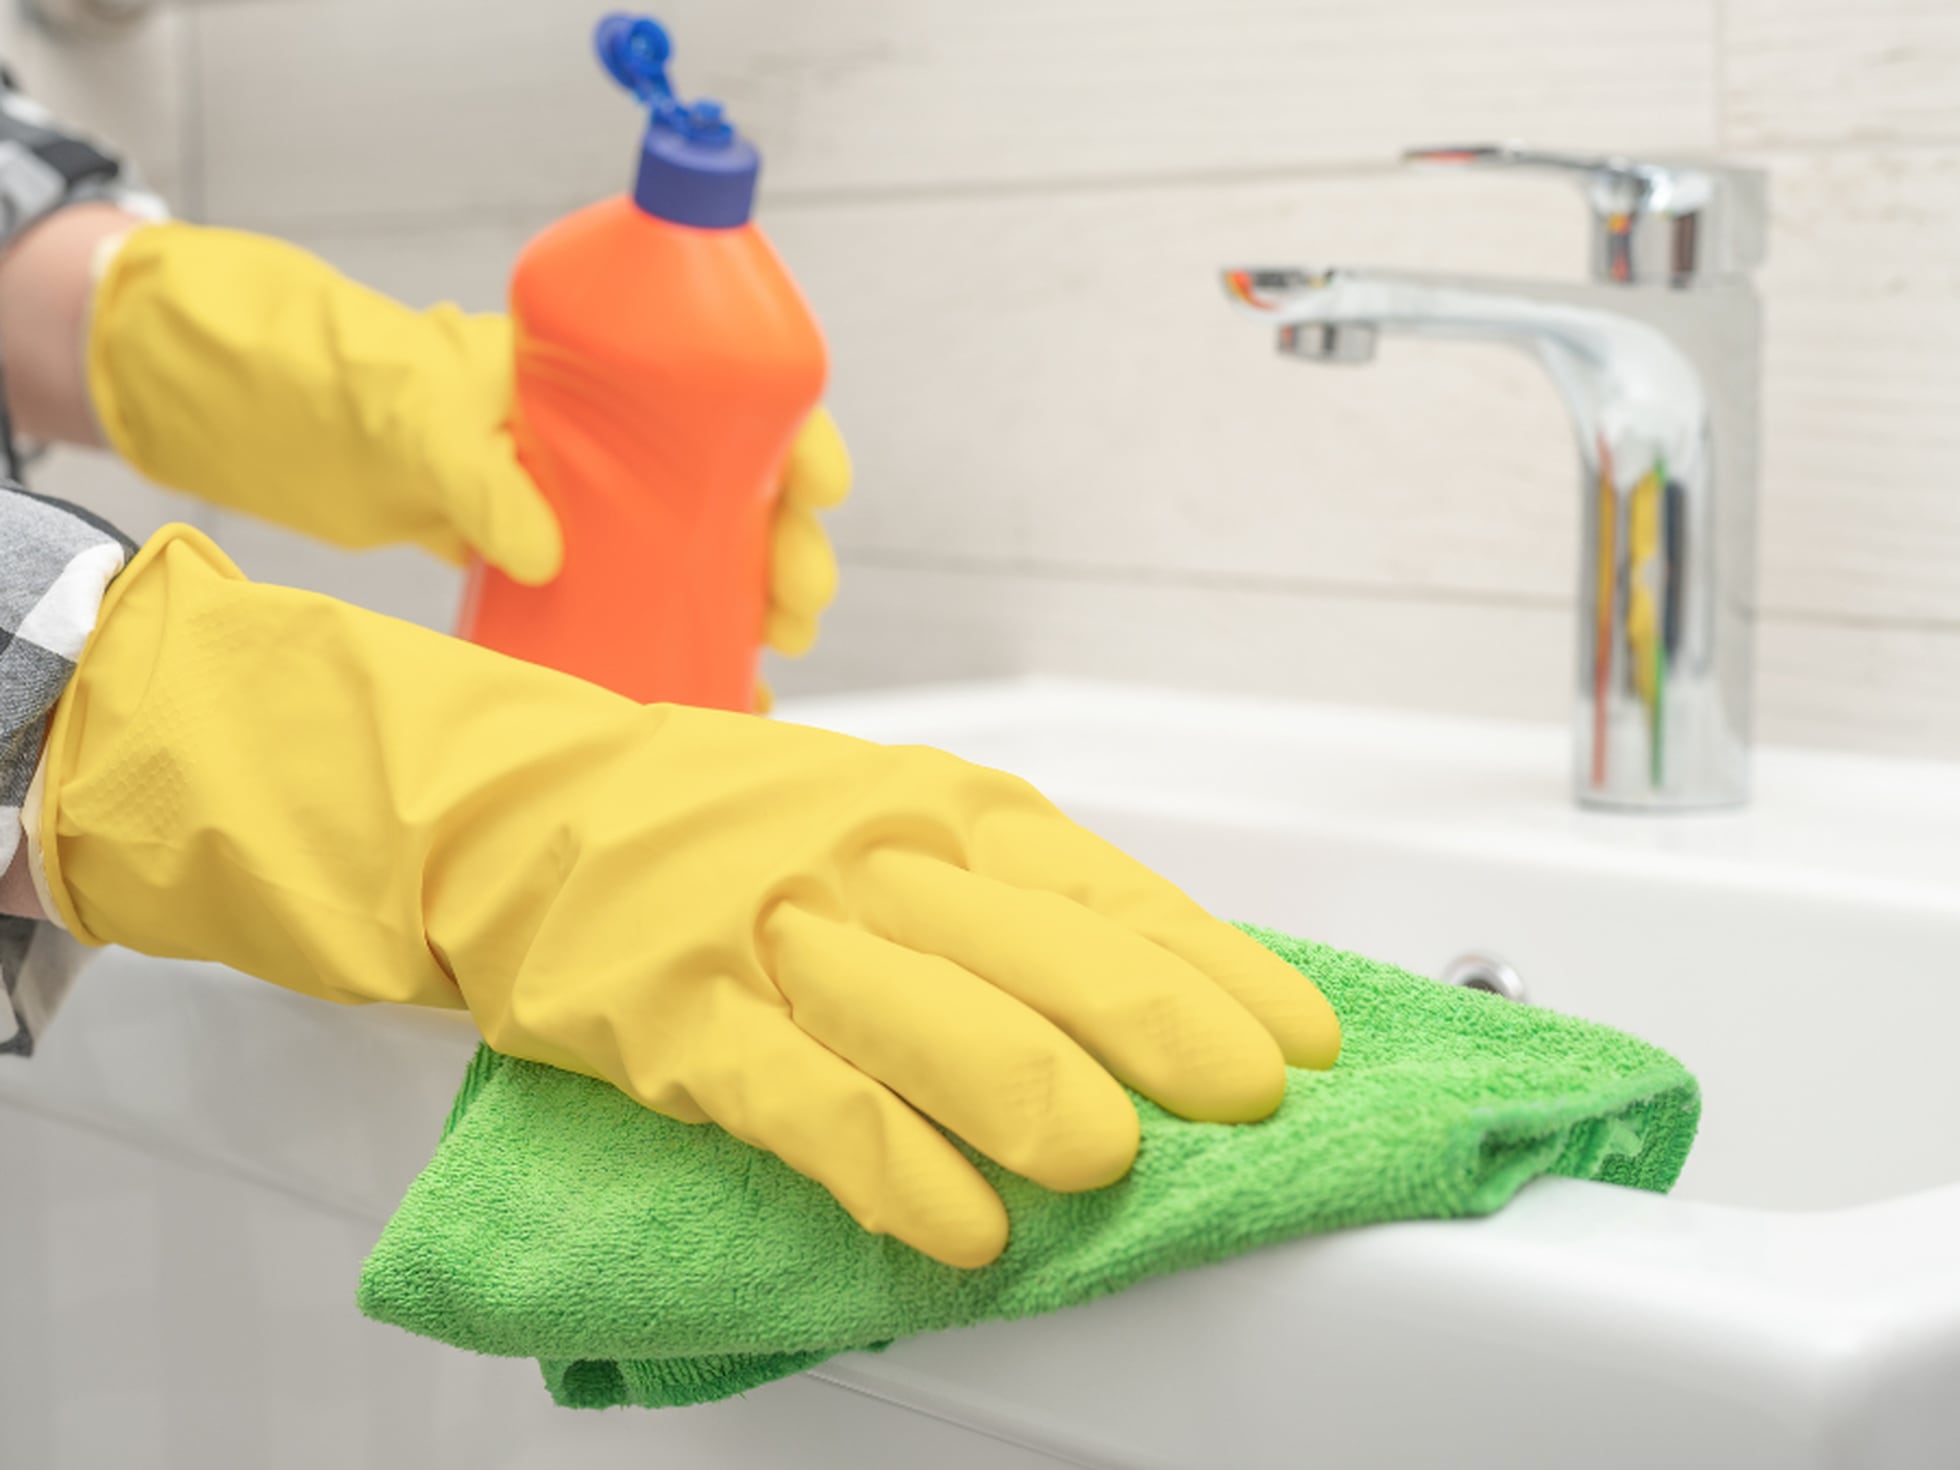 Tipos de guantes de limpieza